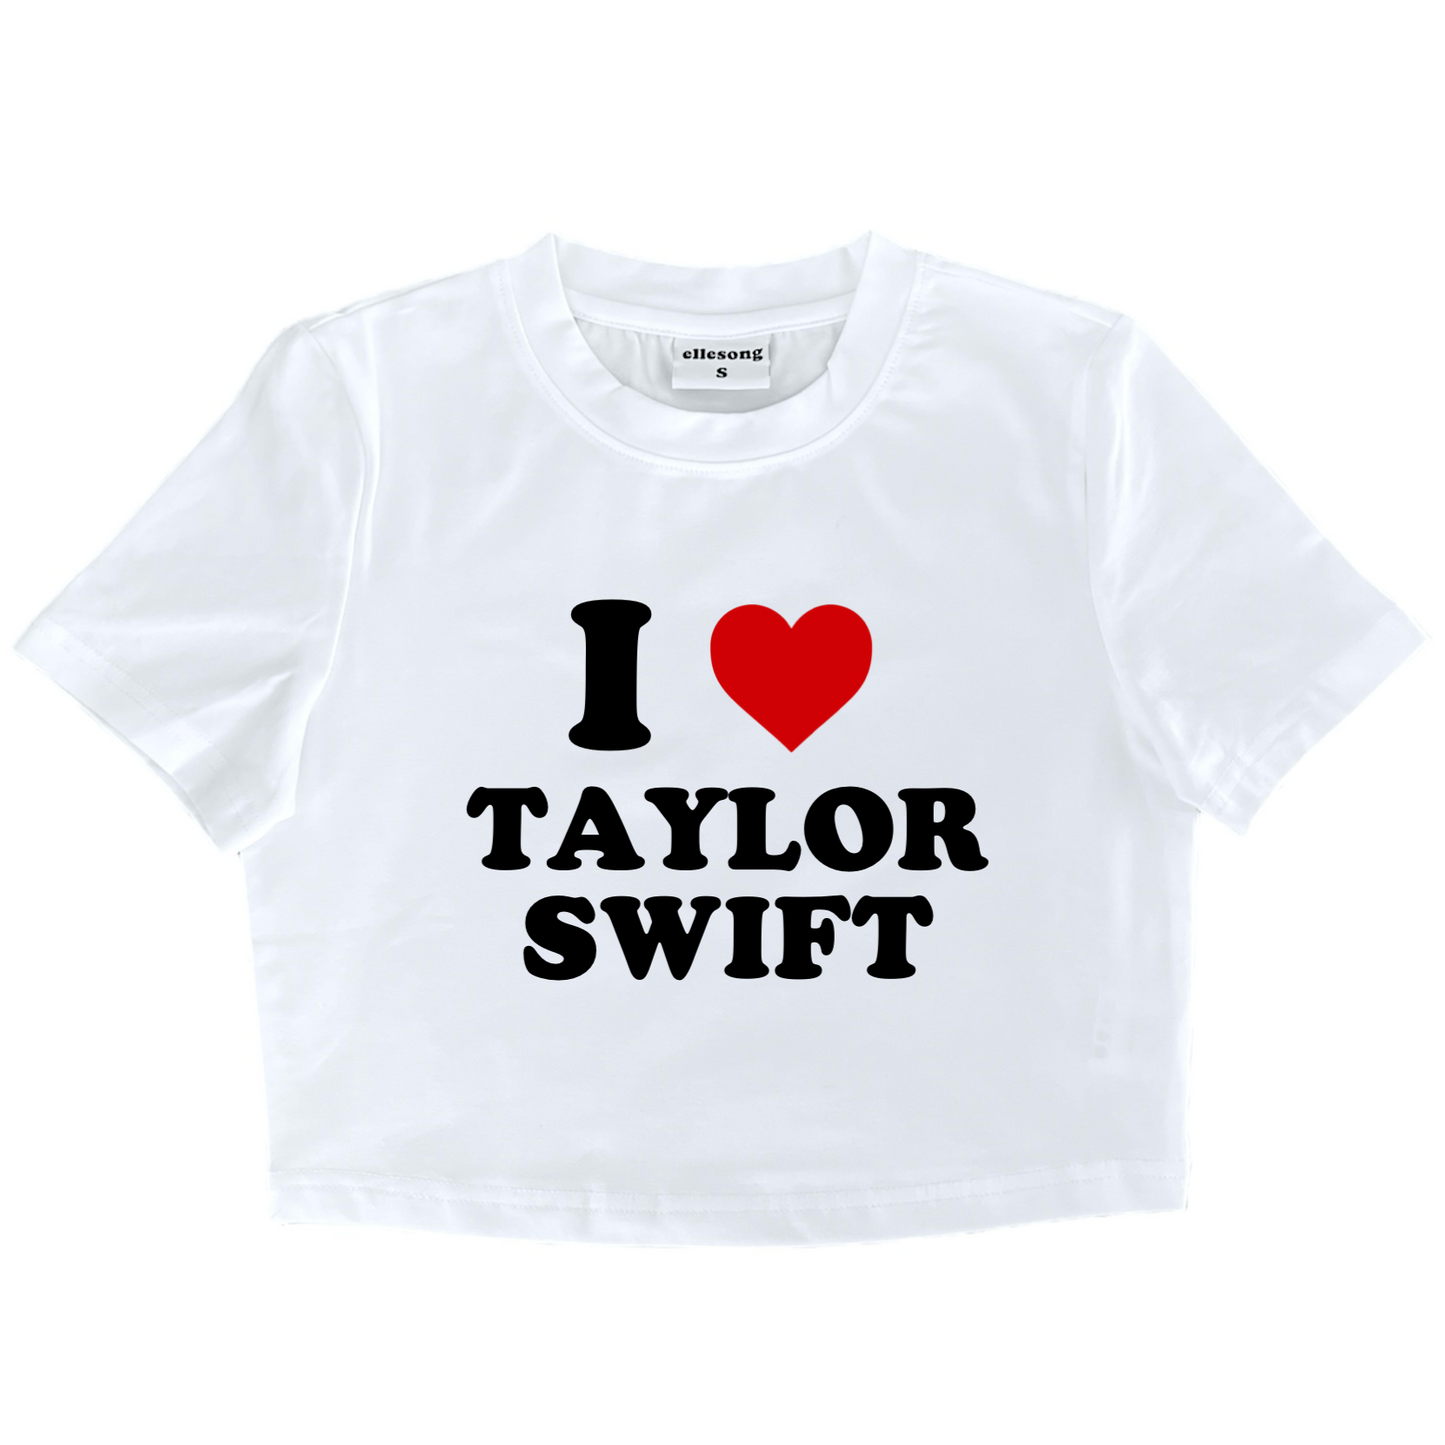 I Heart Taylor Swift Baby Tee